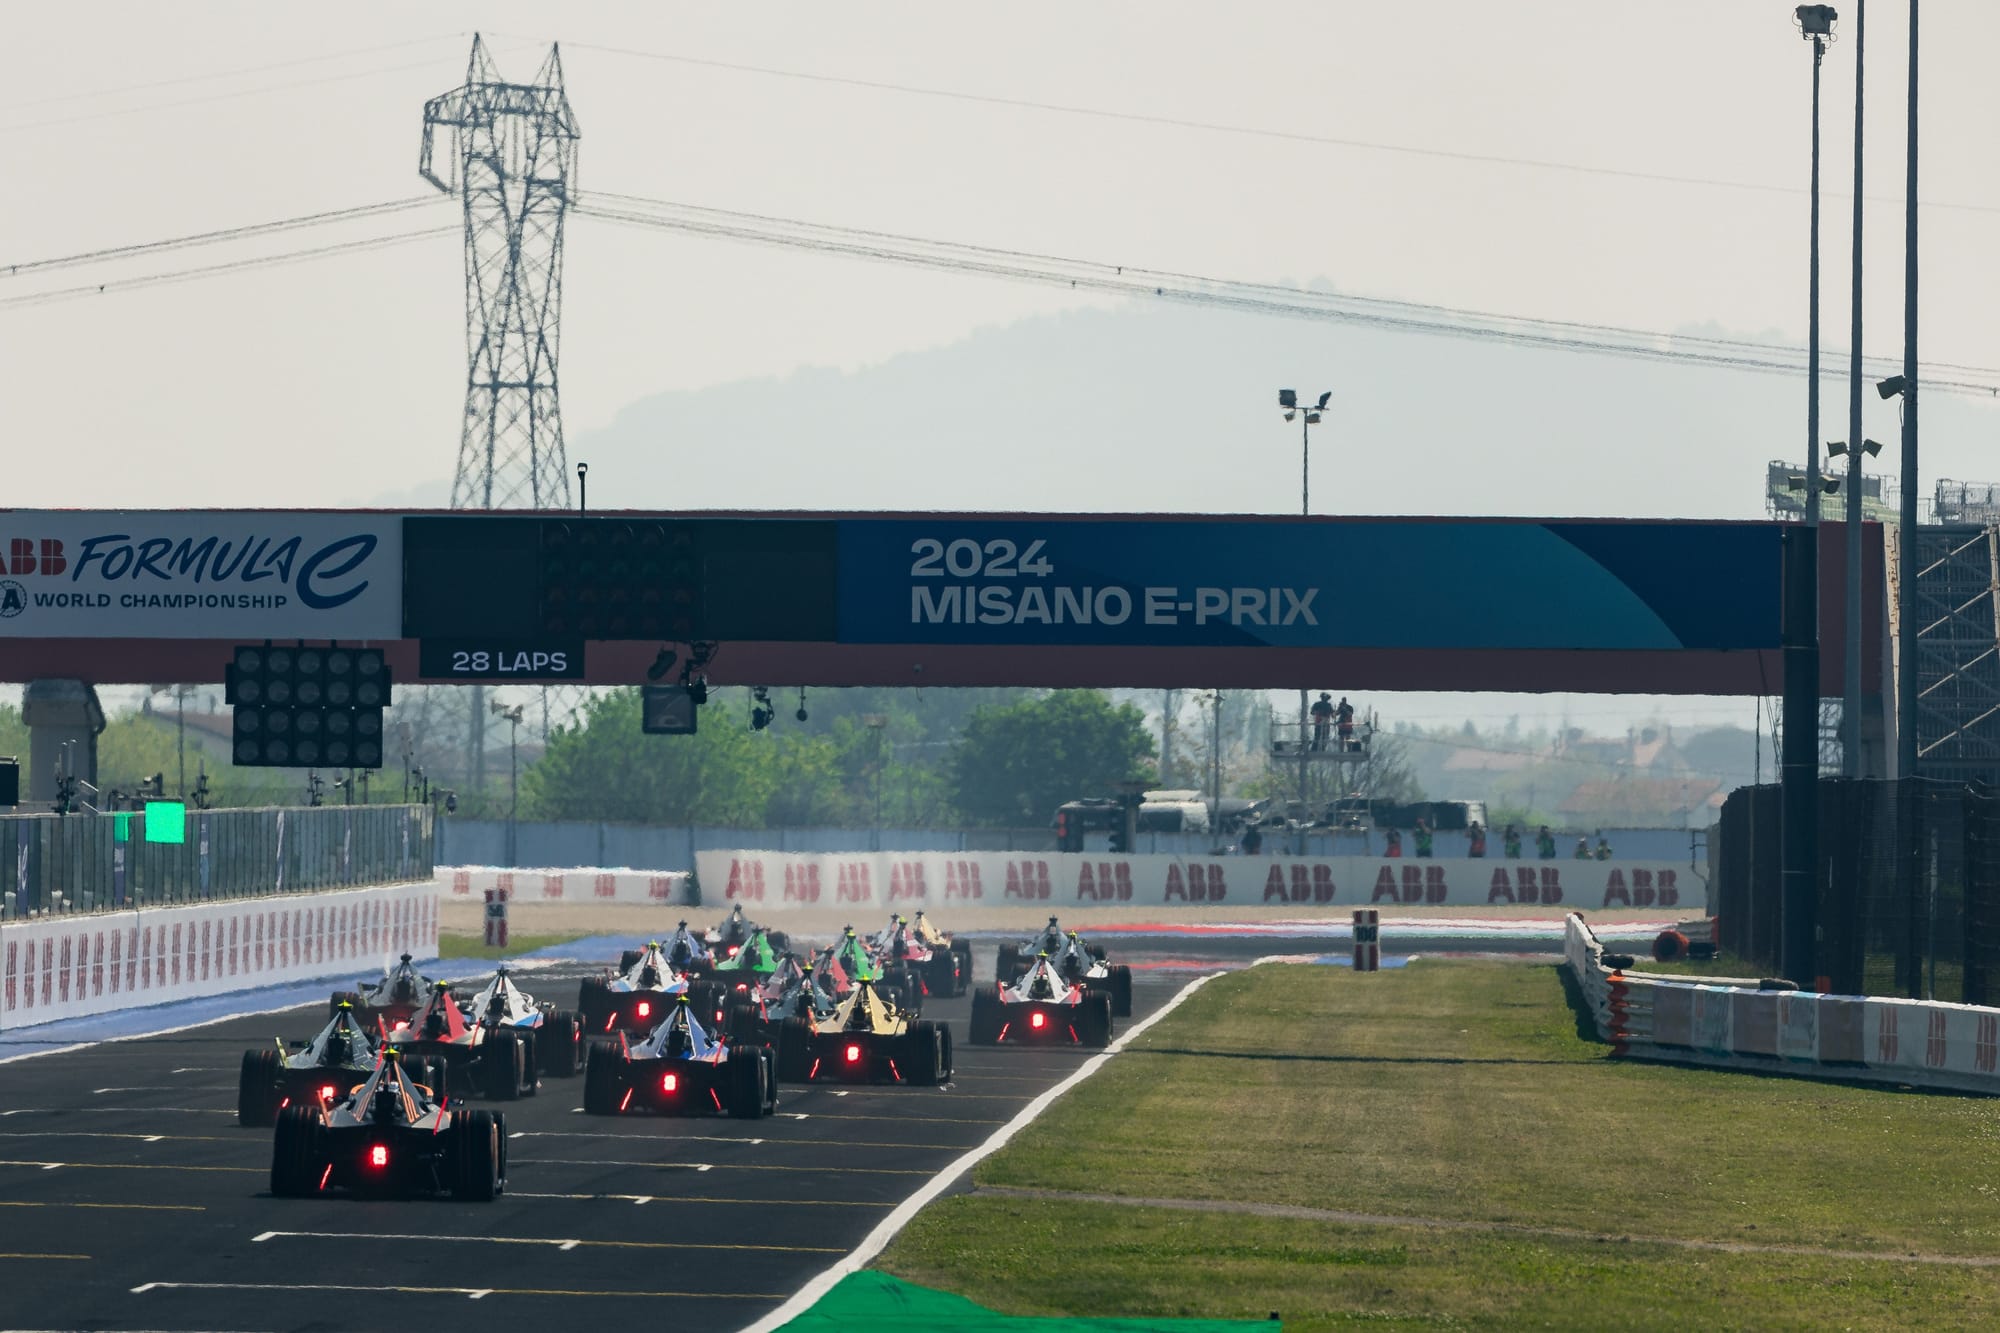 Misano E-Prix, Formula E